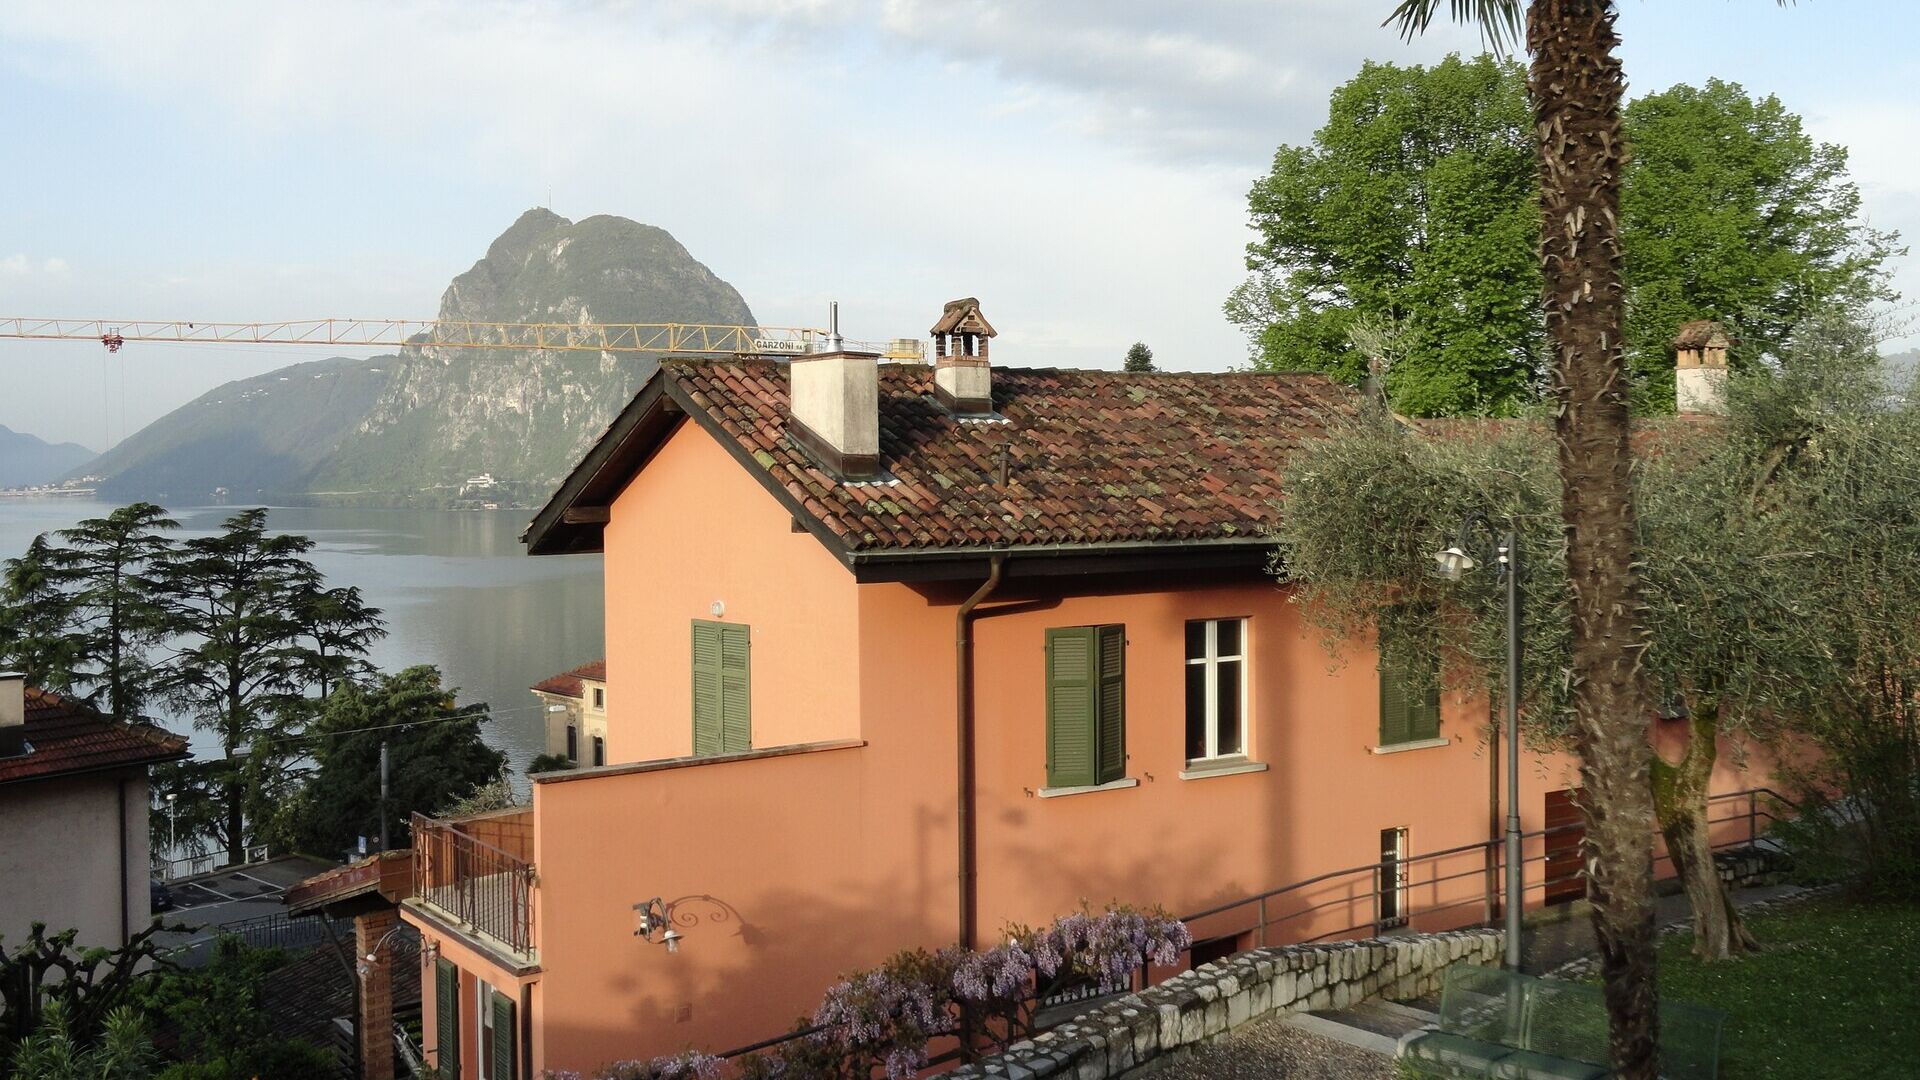 Ljudske i prirodne znanosti: Casa Carla Cattaneo u Castagnoli, na području općine Lugano, u kantonu Ticino: ugostit će Zakladu IBSA za znanstvena istraživanja, koja si postavlja nove ambiciozne ciljeve